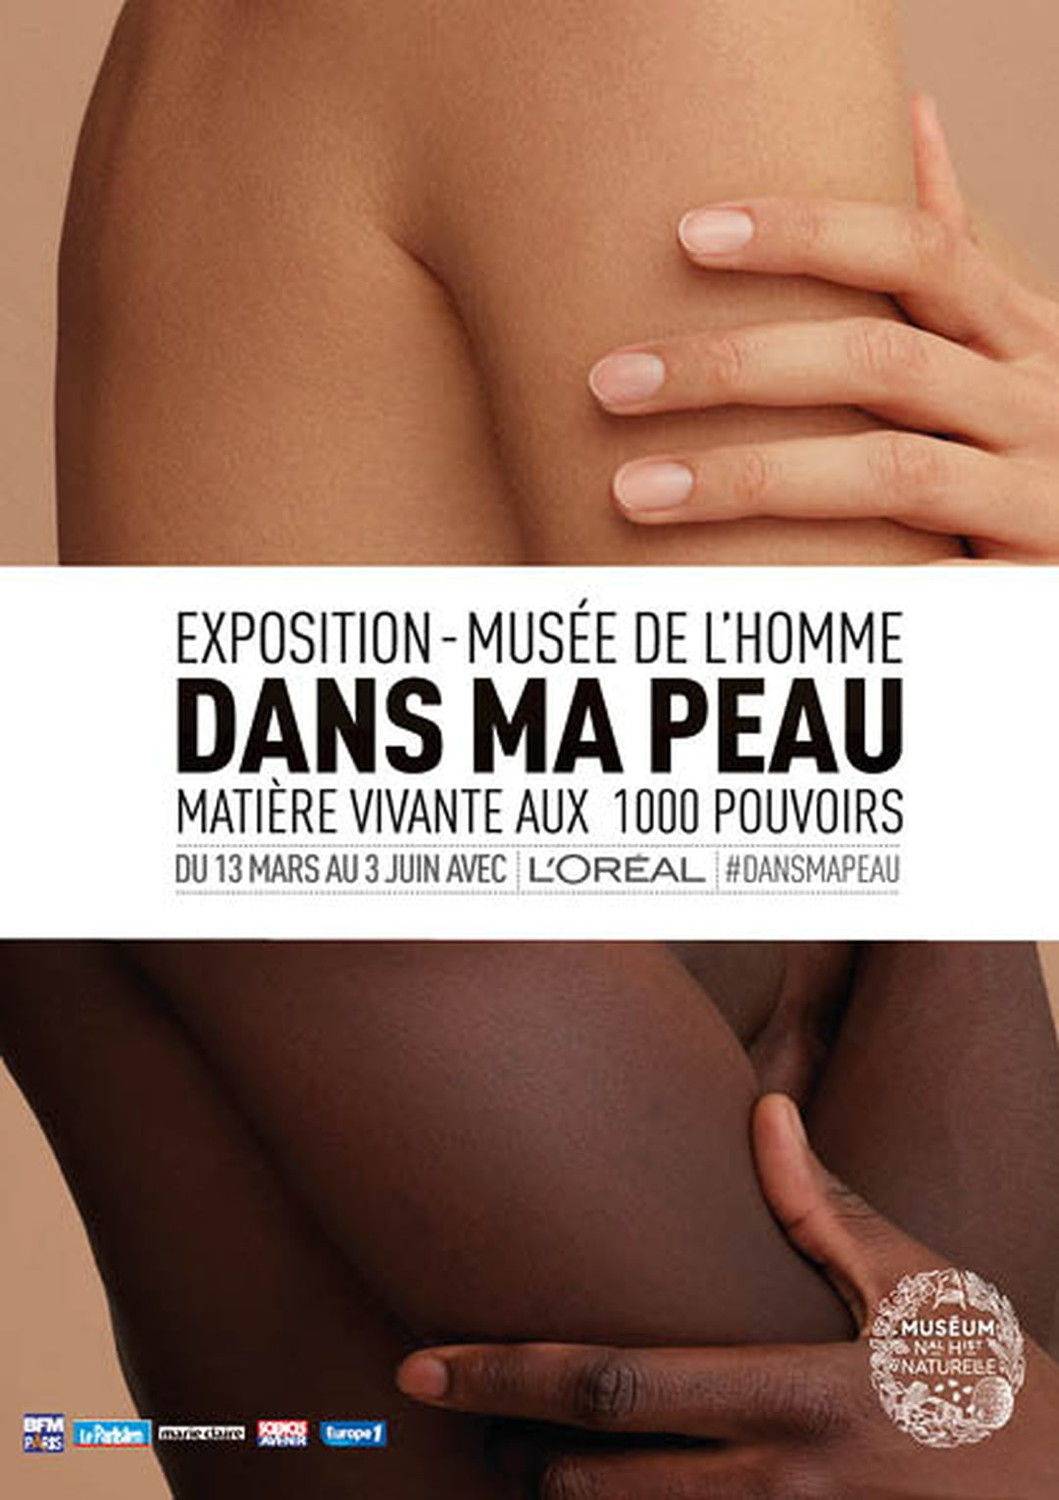 Musée de l'Homme - Dans ma peau, shot by Sasha Marro - © artifices